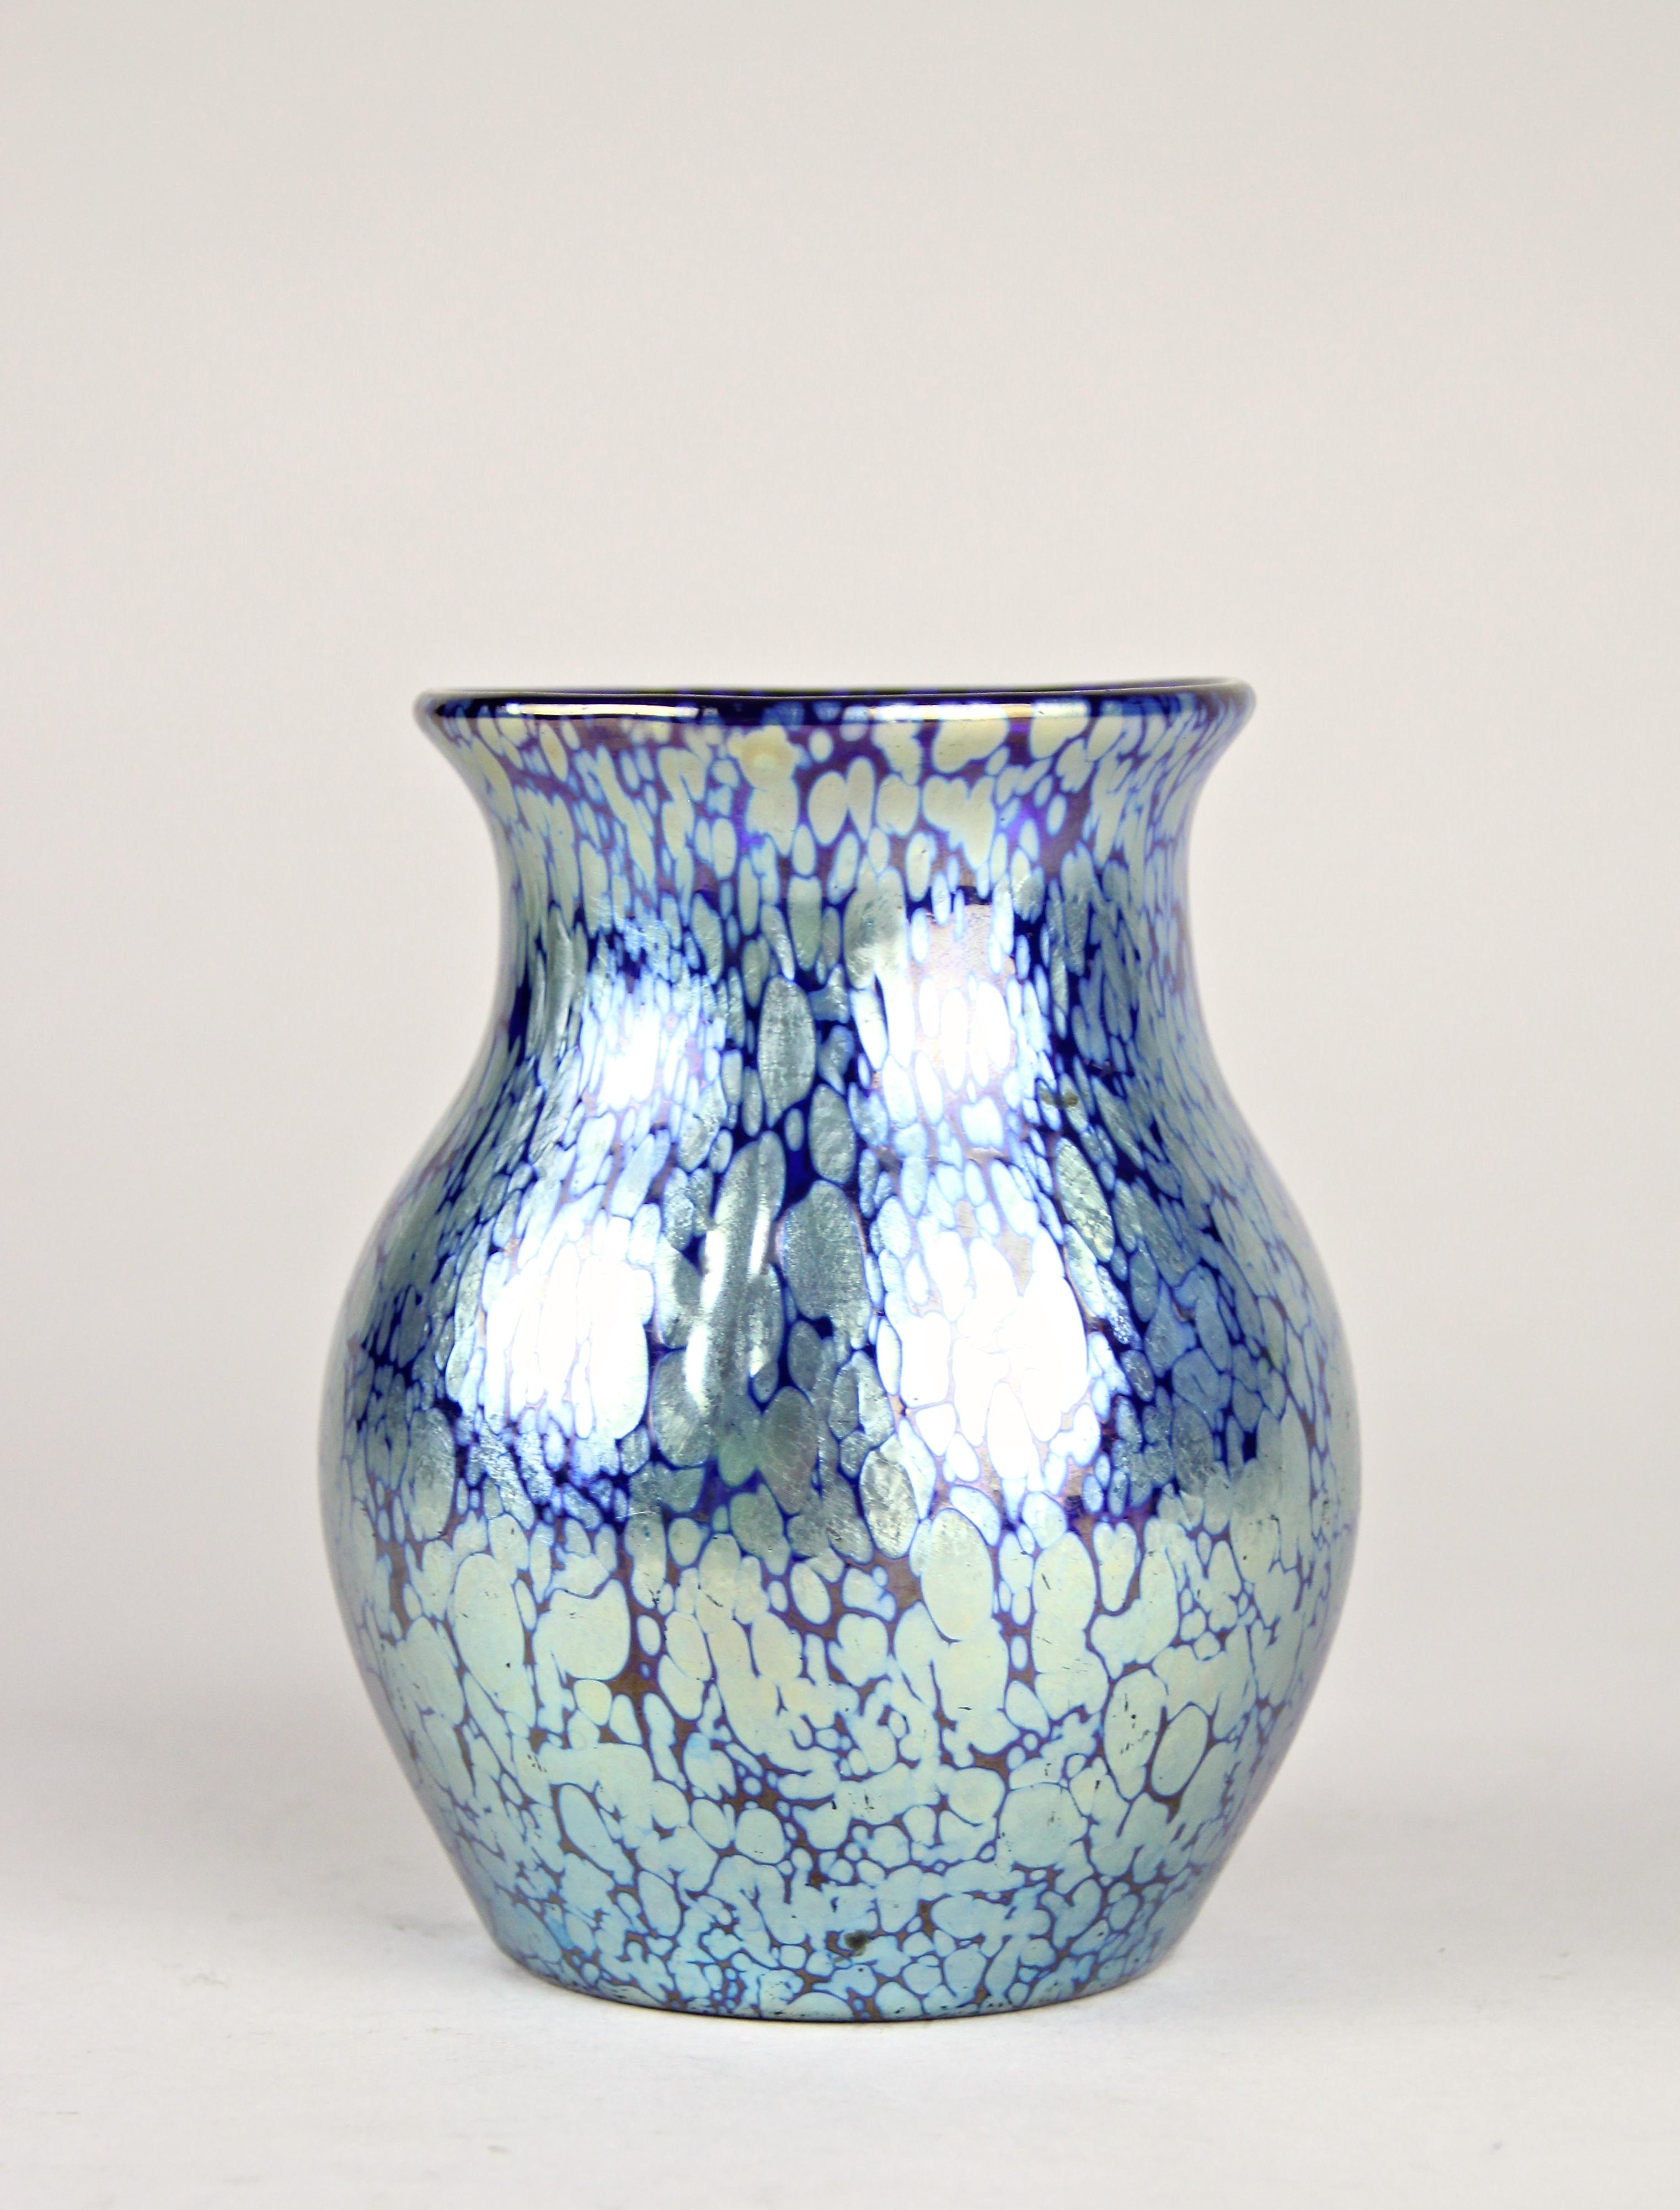 Sehr dekorative Loetz Witwe Glasvase in Dekor Kobalt Papillon aus der Jugendstilzeit in Böhmen, um 1903. Diese prächtige Vase aus den Werkstätten in Klostermühle zeigt einen schön geformten bauchigen Körper aus dunkelblauem Glas. Ein auffälliges